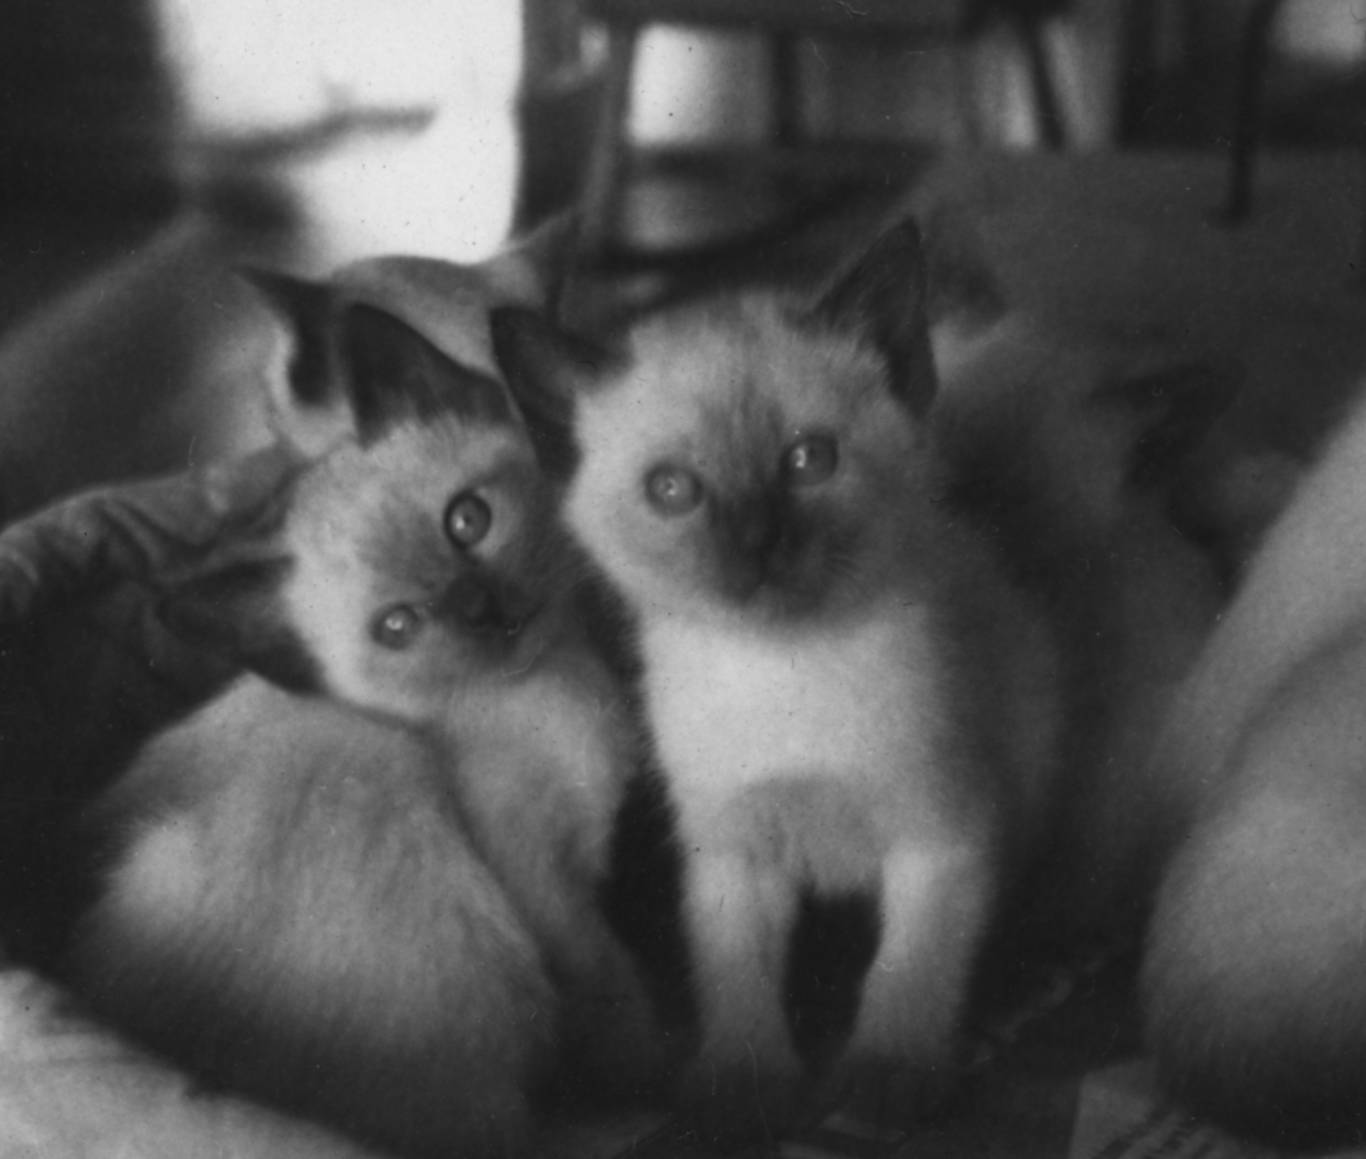 Kittens - frame 2